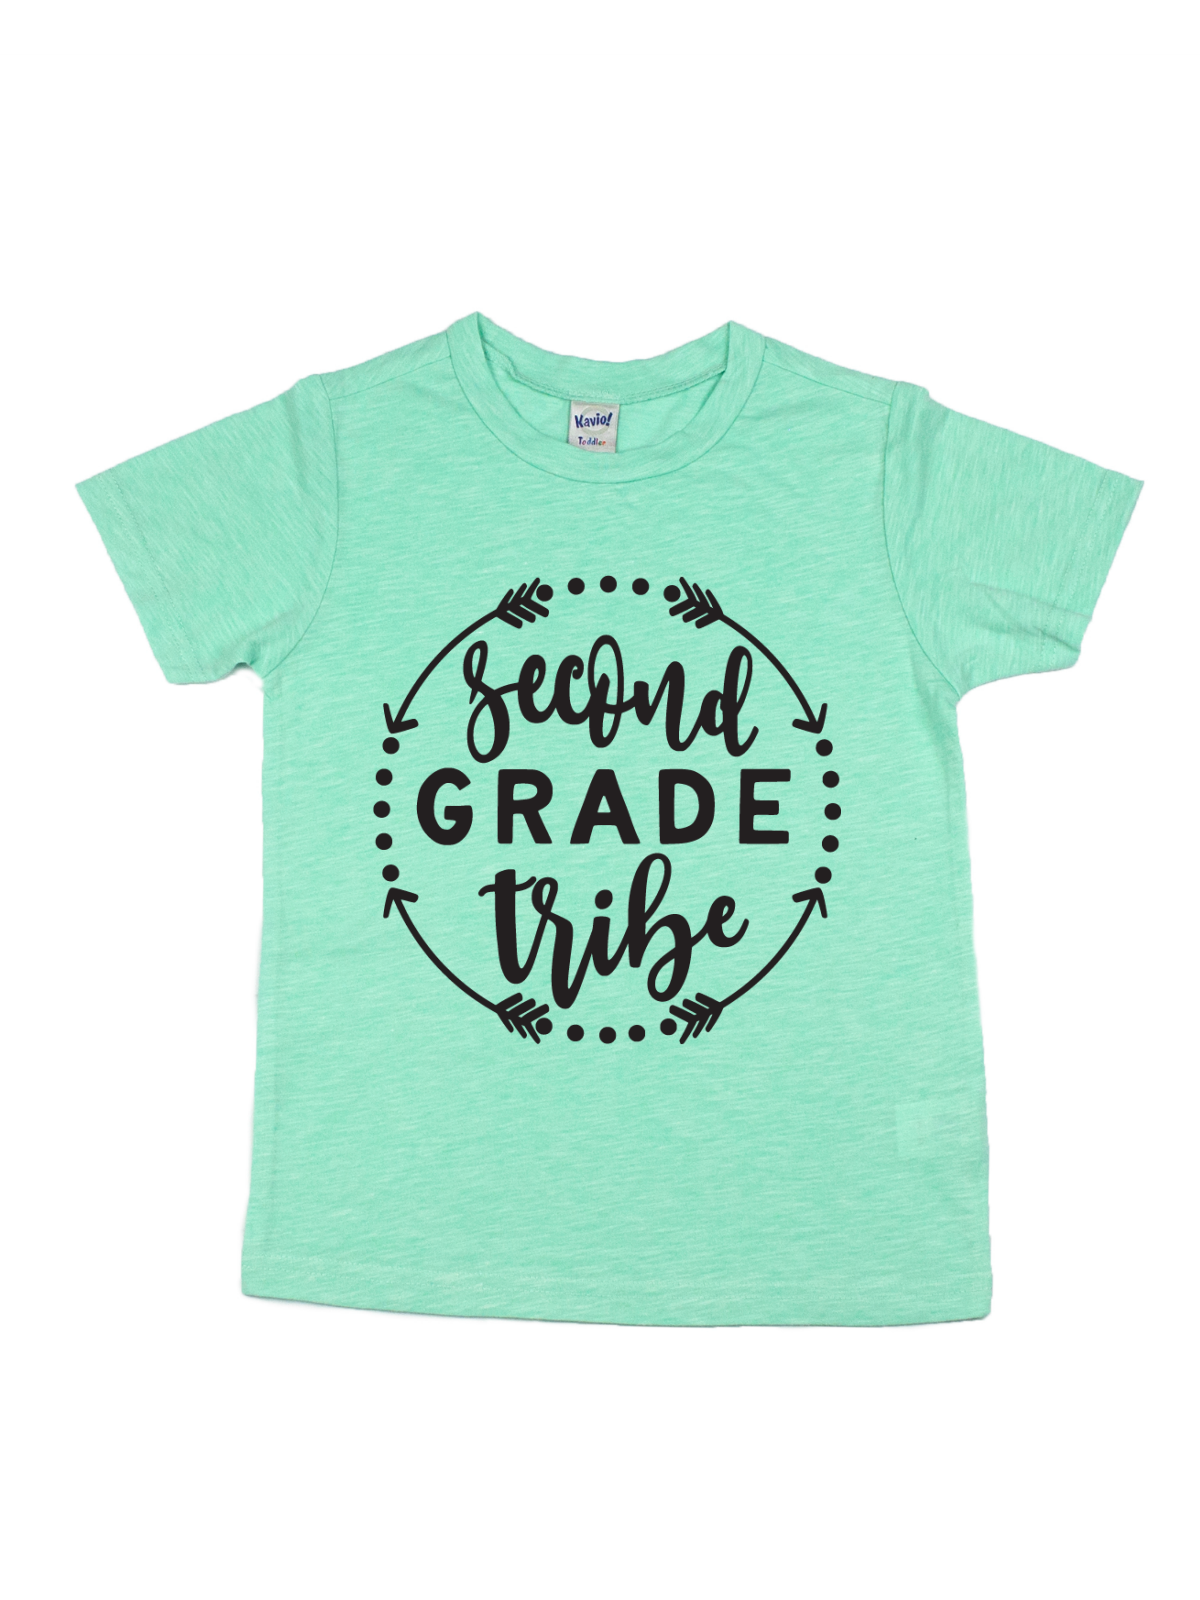 second grade tribe kids green shirt